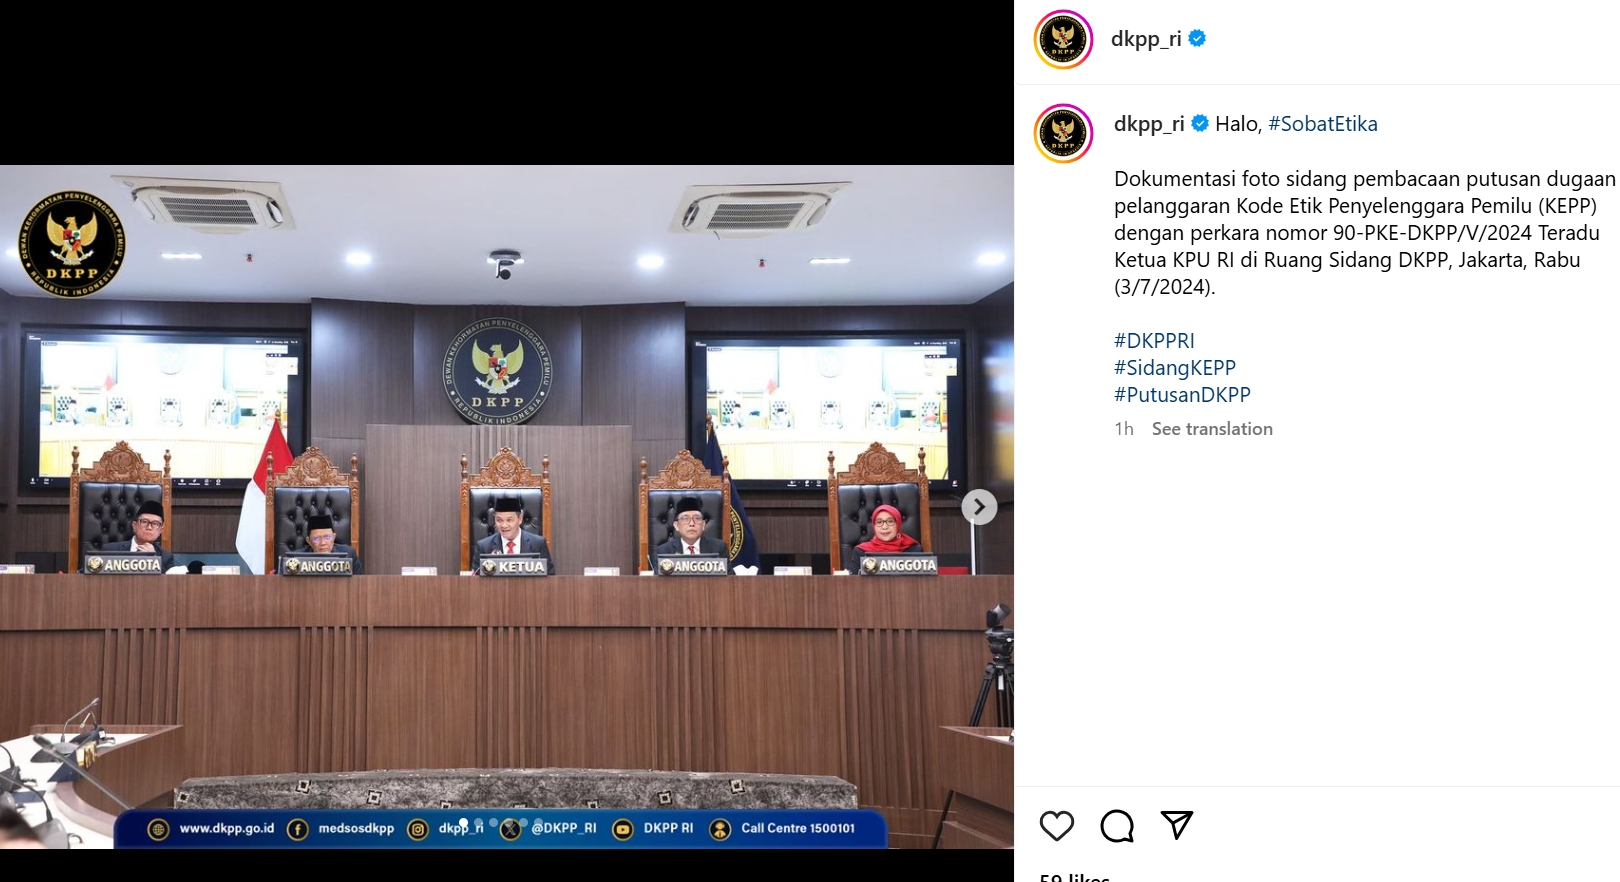 Ketua KPU RI Hasyim Asy'ari Resmi Dipecat DKPP, Ini Kasusnya